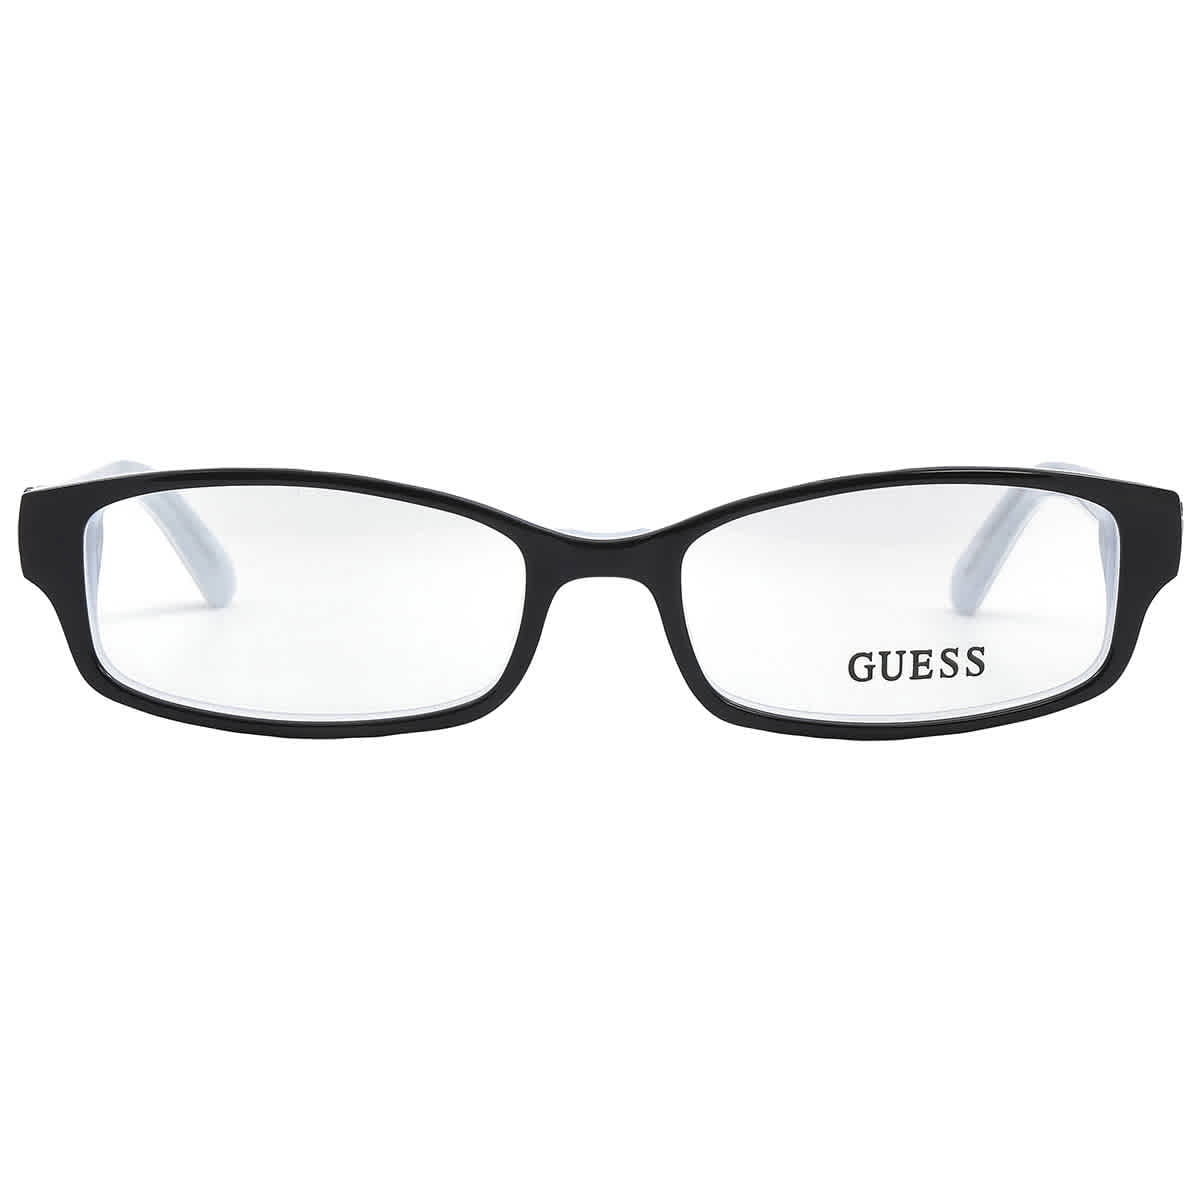 GUESS Eyeglasses GU2526 003 Black/Crystal 52MM